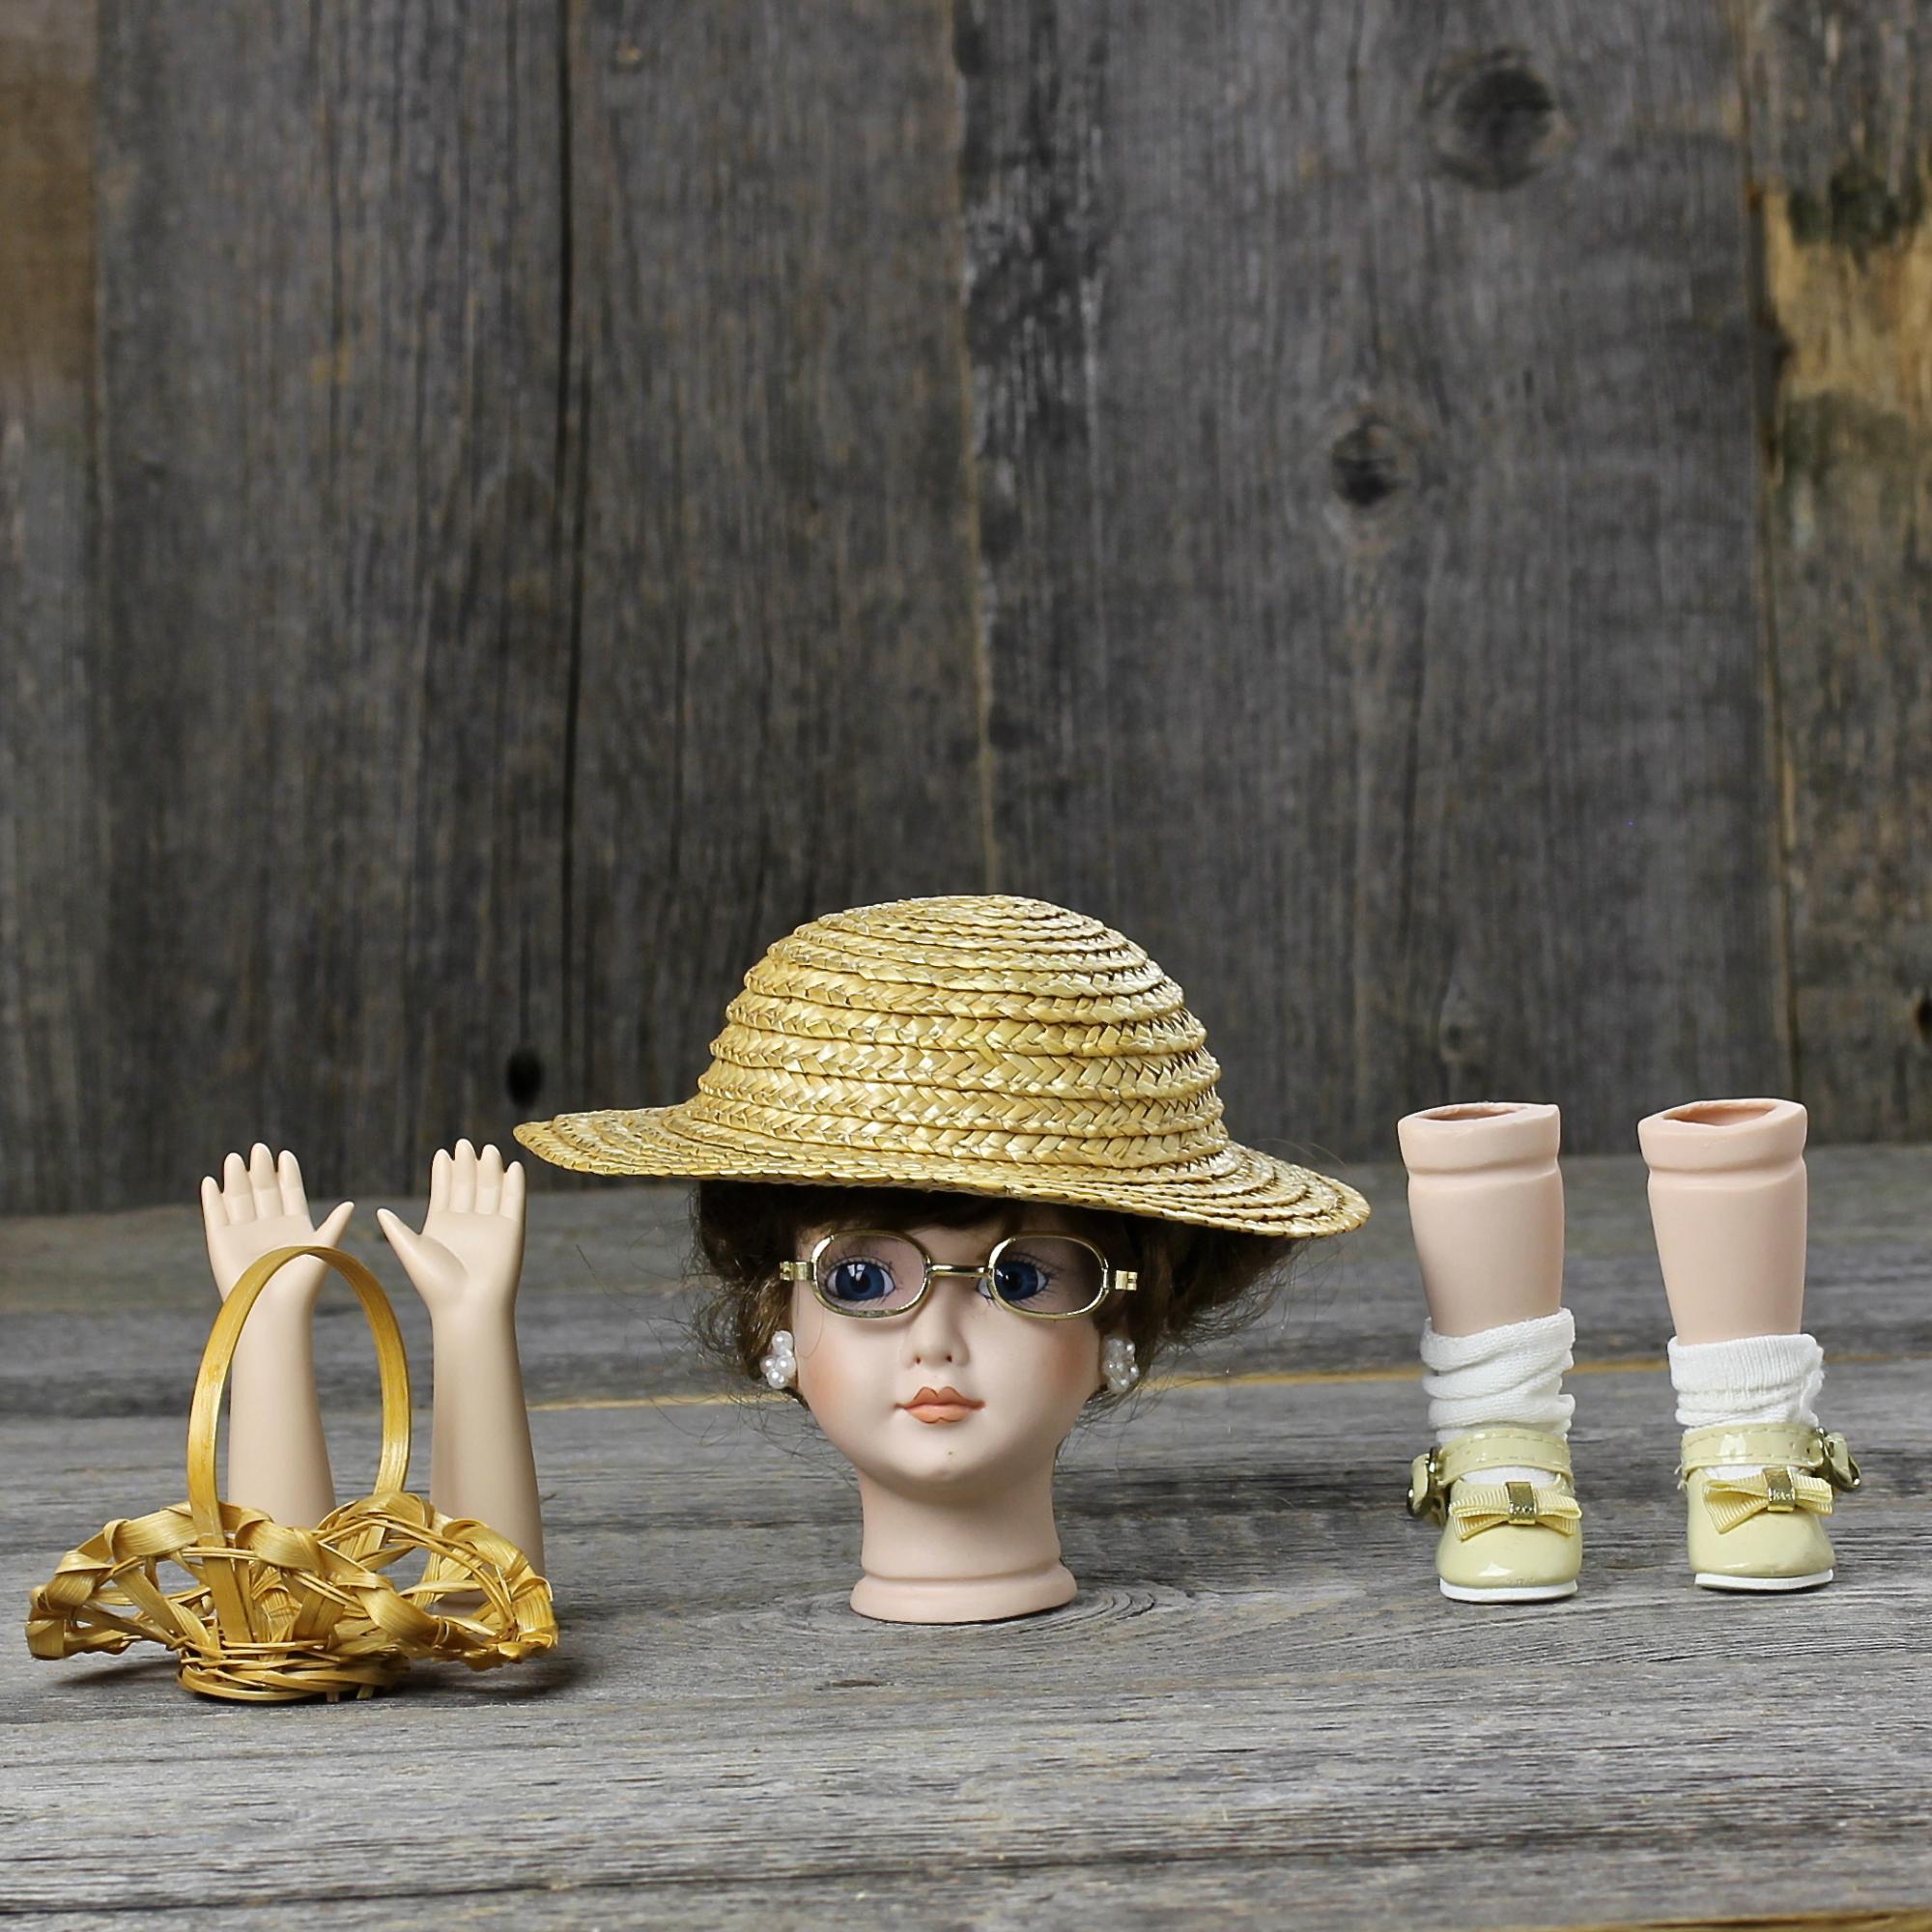 Винтажные детали для куклы с лондонского блошиного рынка Бюст, шляпка, очки, руки, ноги в туфельках, корзинка